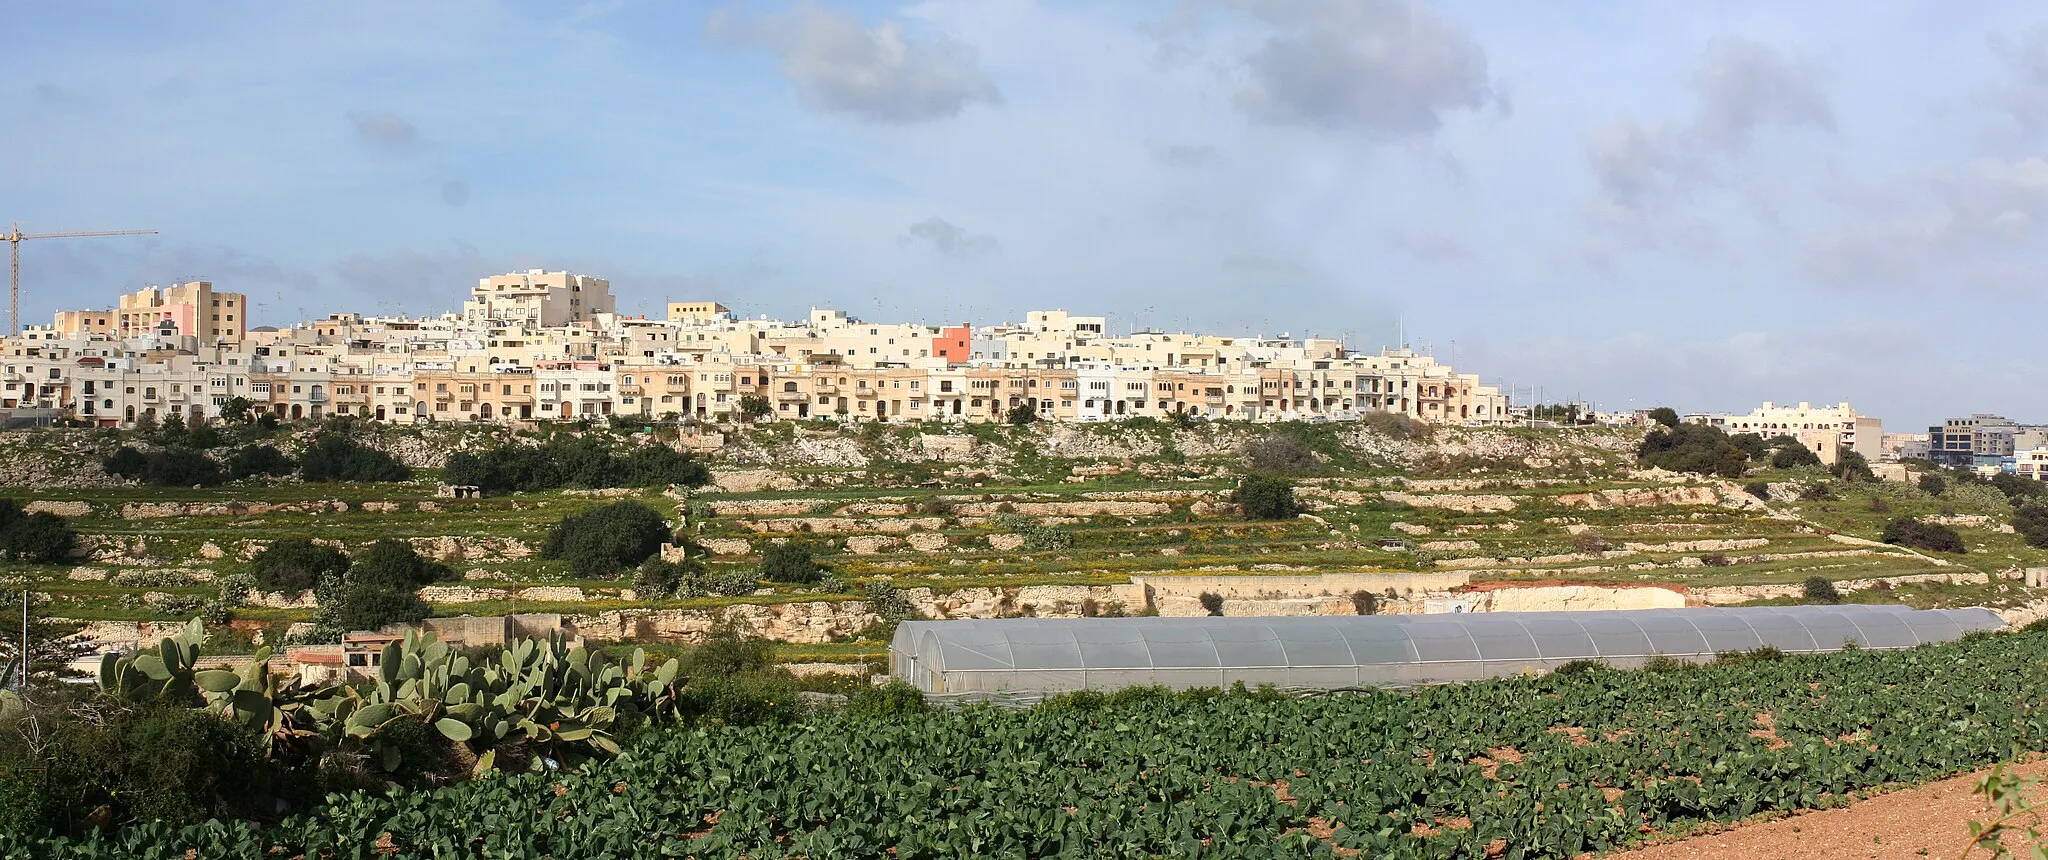 Immagine di Malta